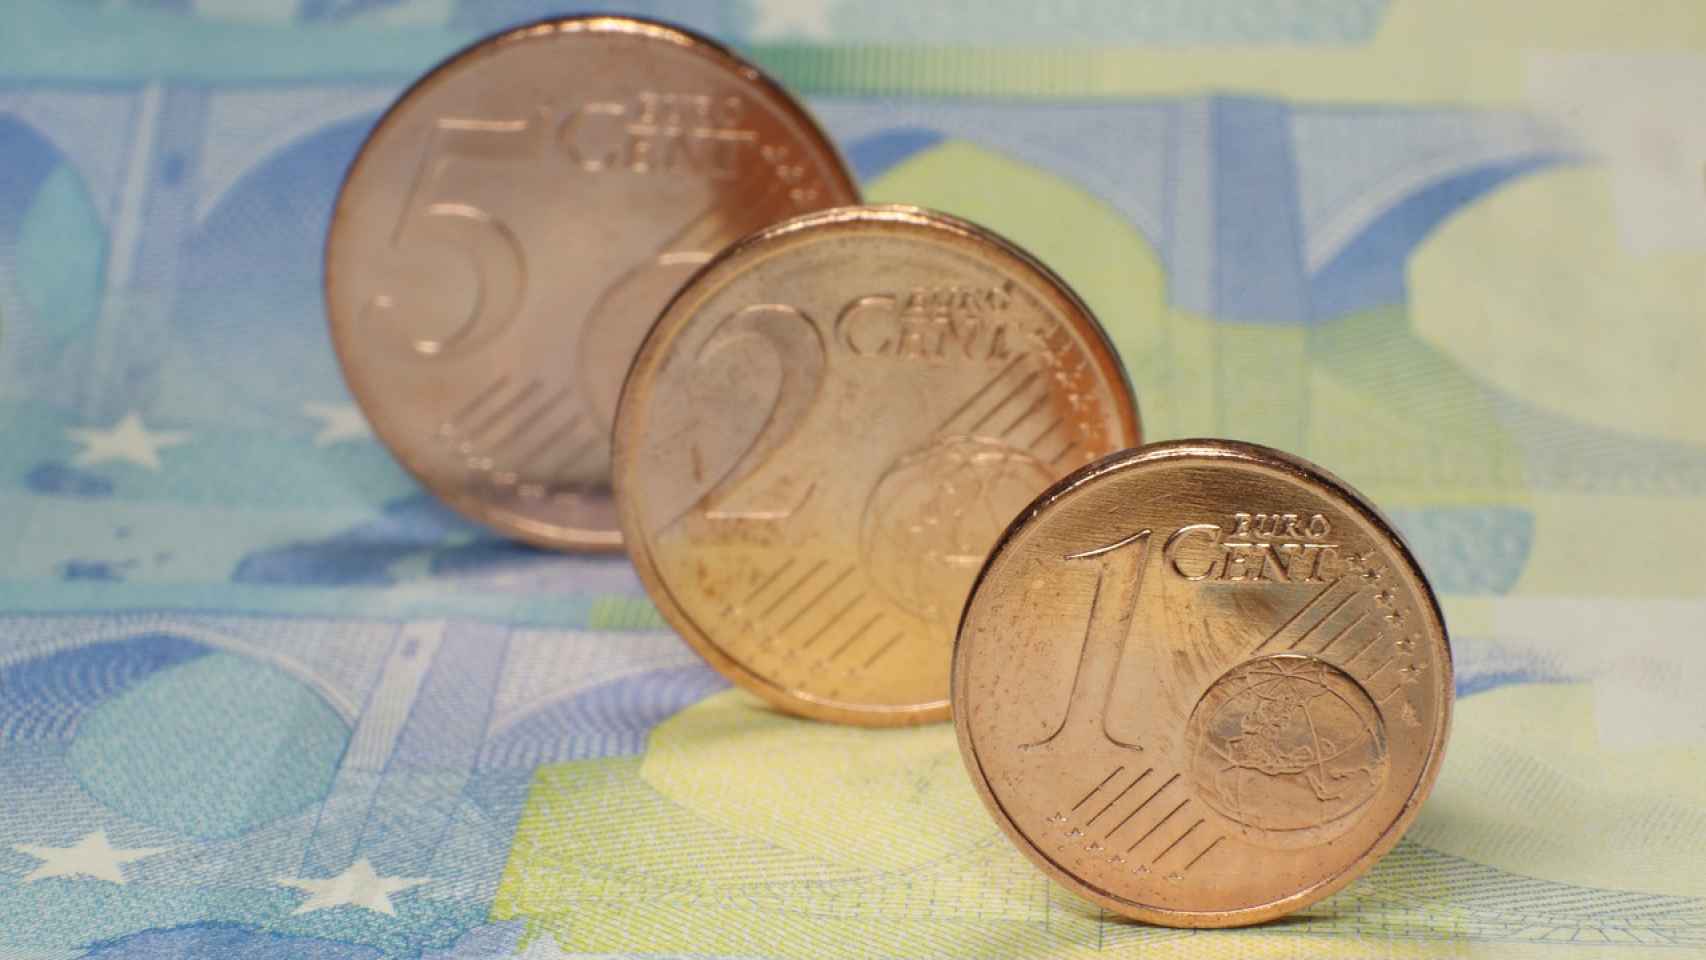 Monedas de uno, dos y cinco céntimos de euro.